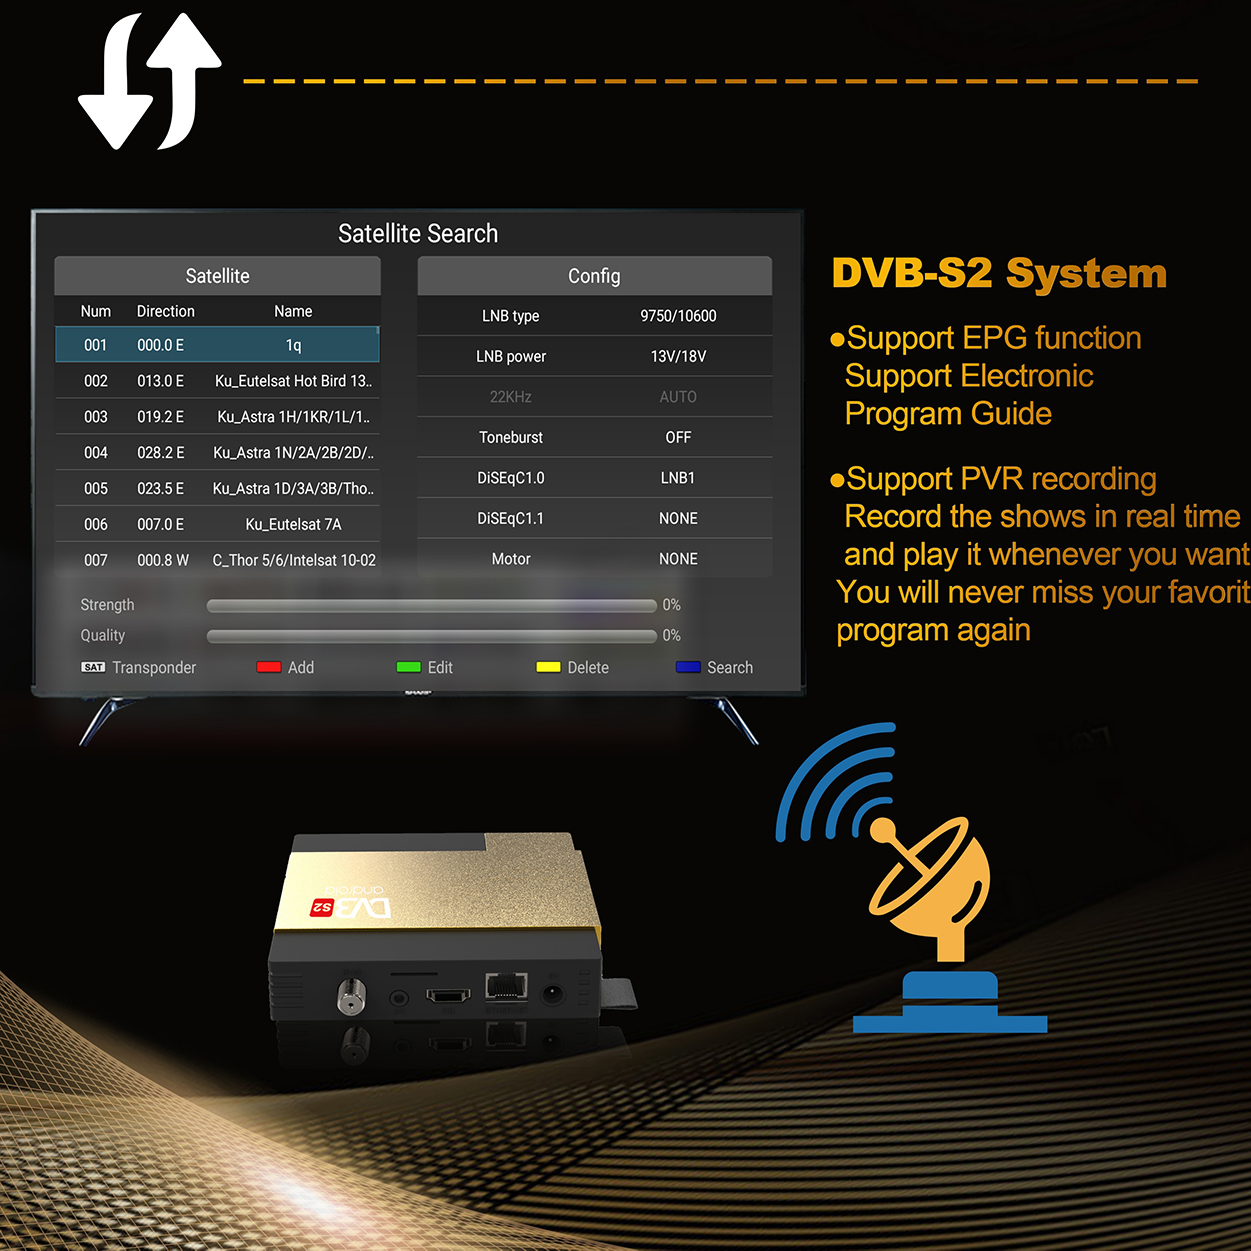 Factory OEM ODM Hybrid combo OTT DVB-S2 set top box Allwinner H313 1080p decoder smart android tv box dvb S2 satellite receiver